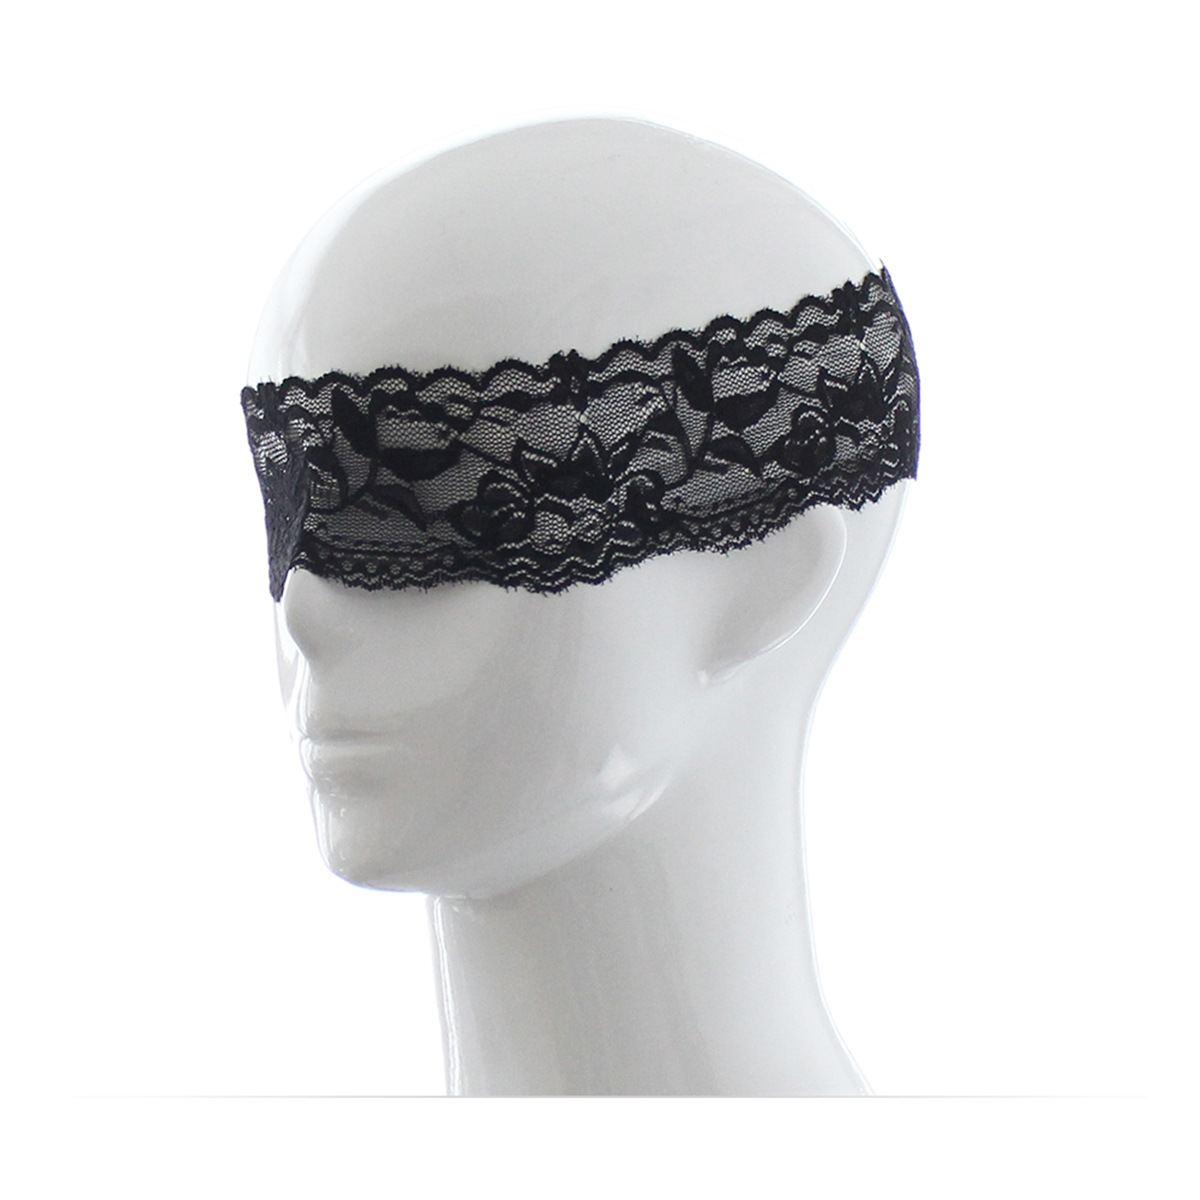 女用情趣眼罩神秘性感丝滑双色蒙眼布遮光可捆绑束缚SM激情用品-阿里巴巴